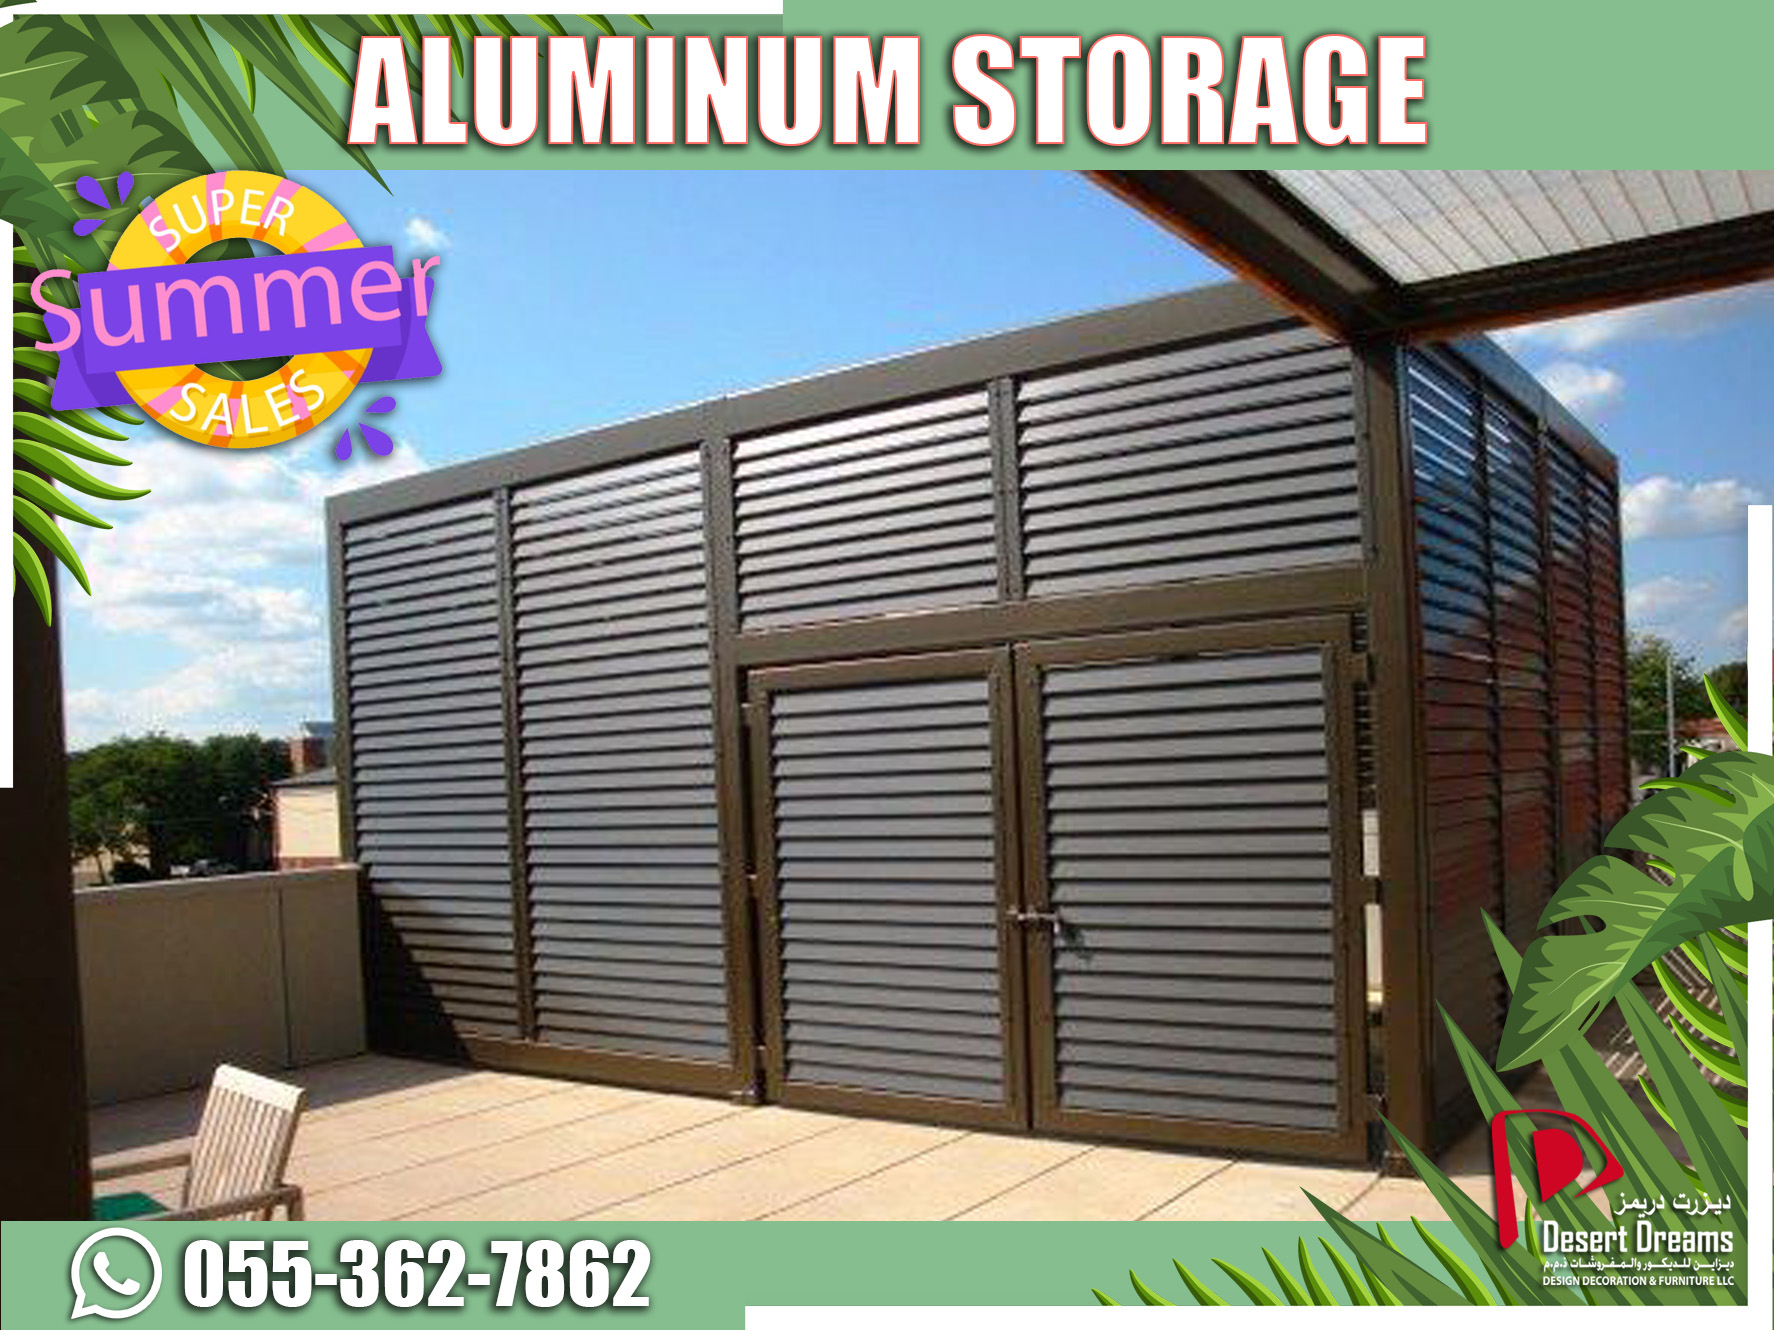 Aluminum Storage Solution in UAE.jpg